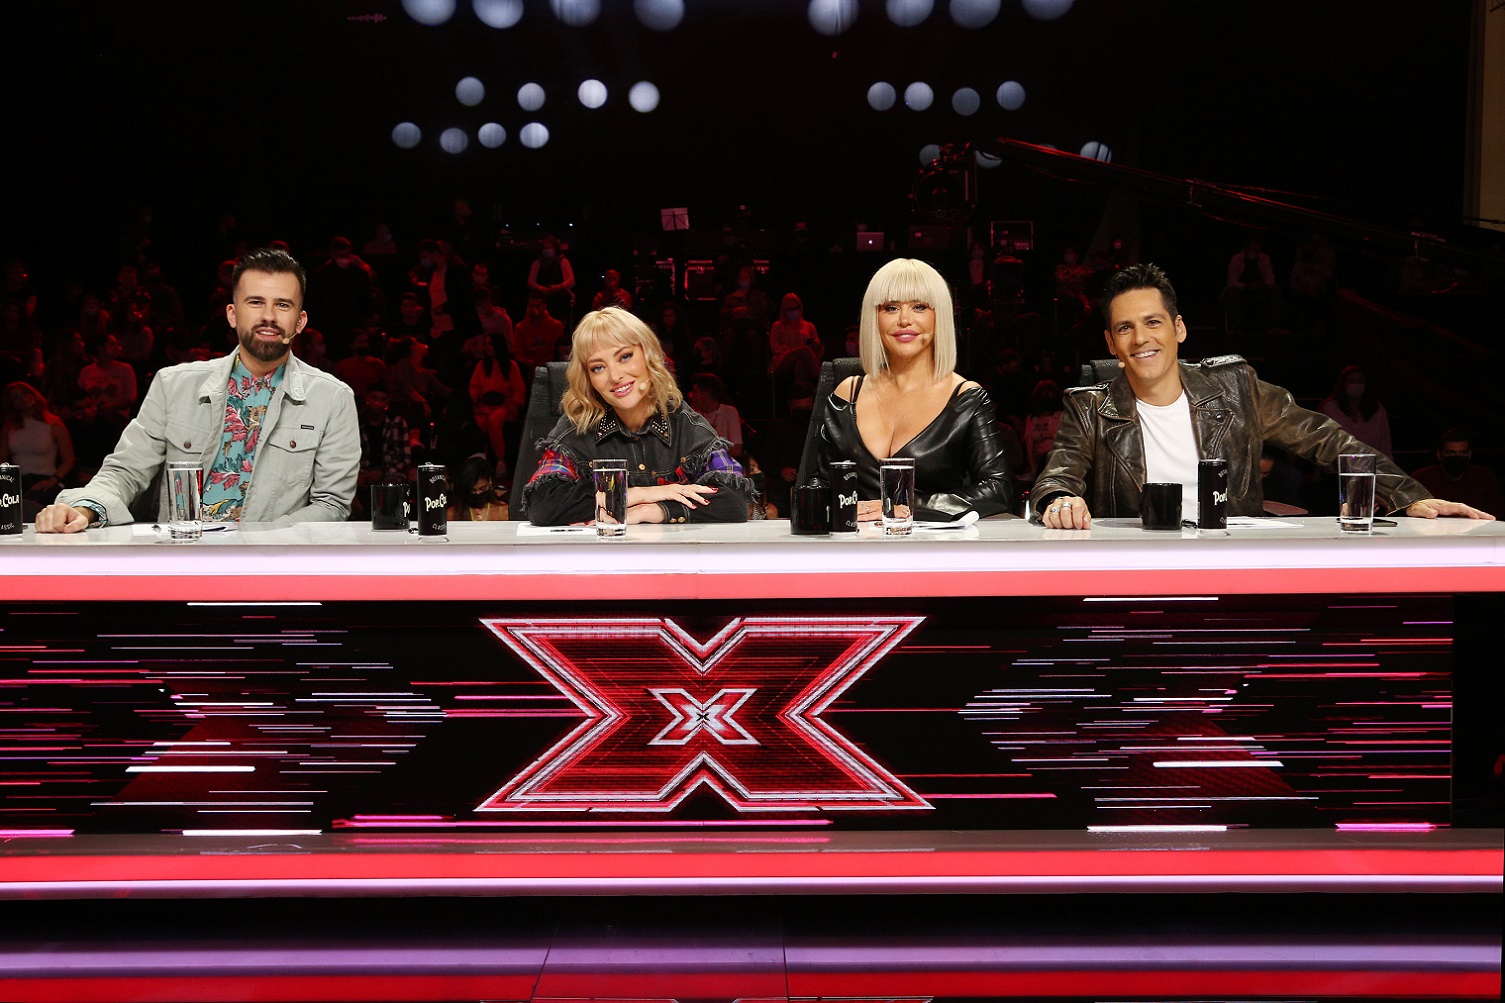 Ieri seară, la X Factor, Un concurent din echipa Loredanei şi-a cunoscut familia pe scena X Factor Suntem mândri cu toții că fratele nostru a ajuns unde a ajuns